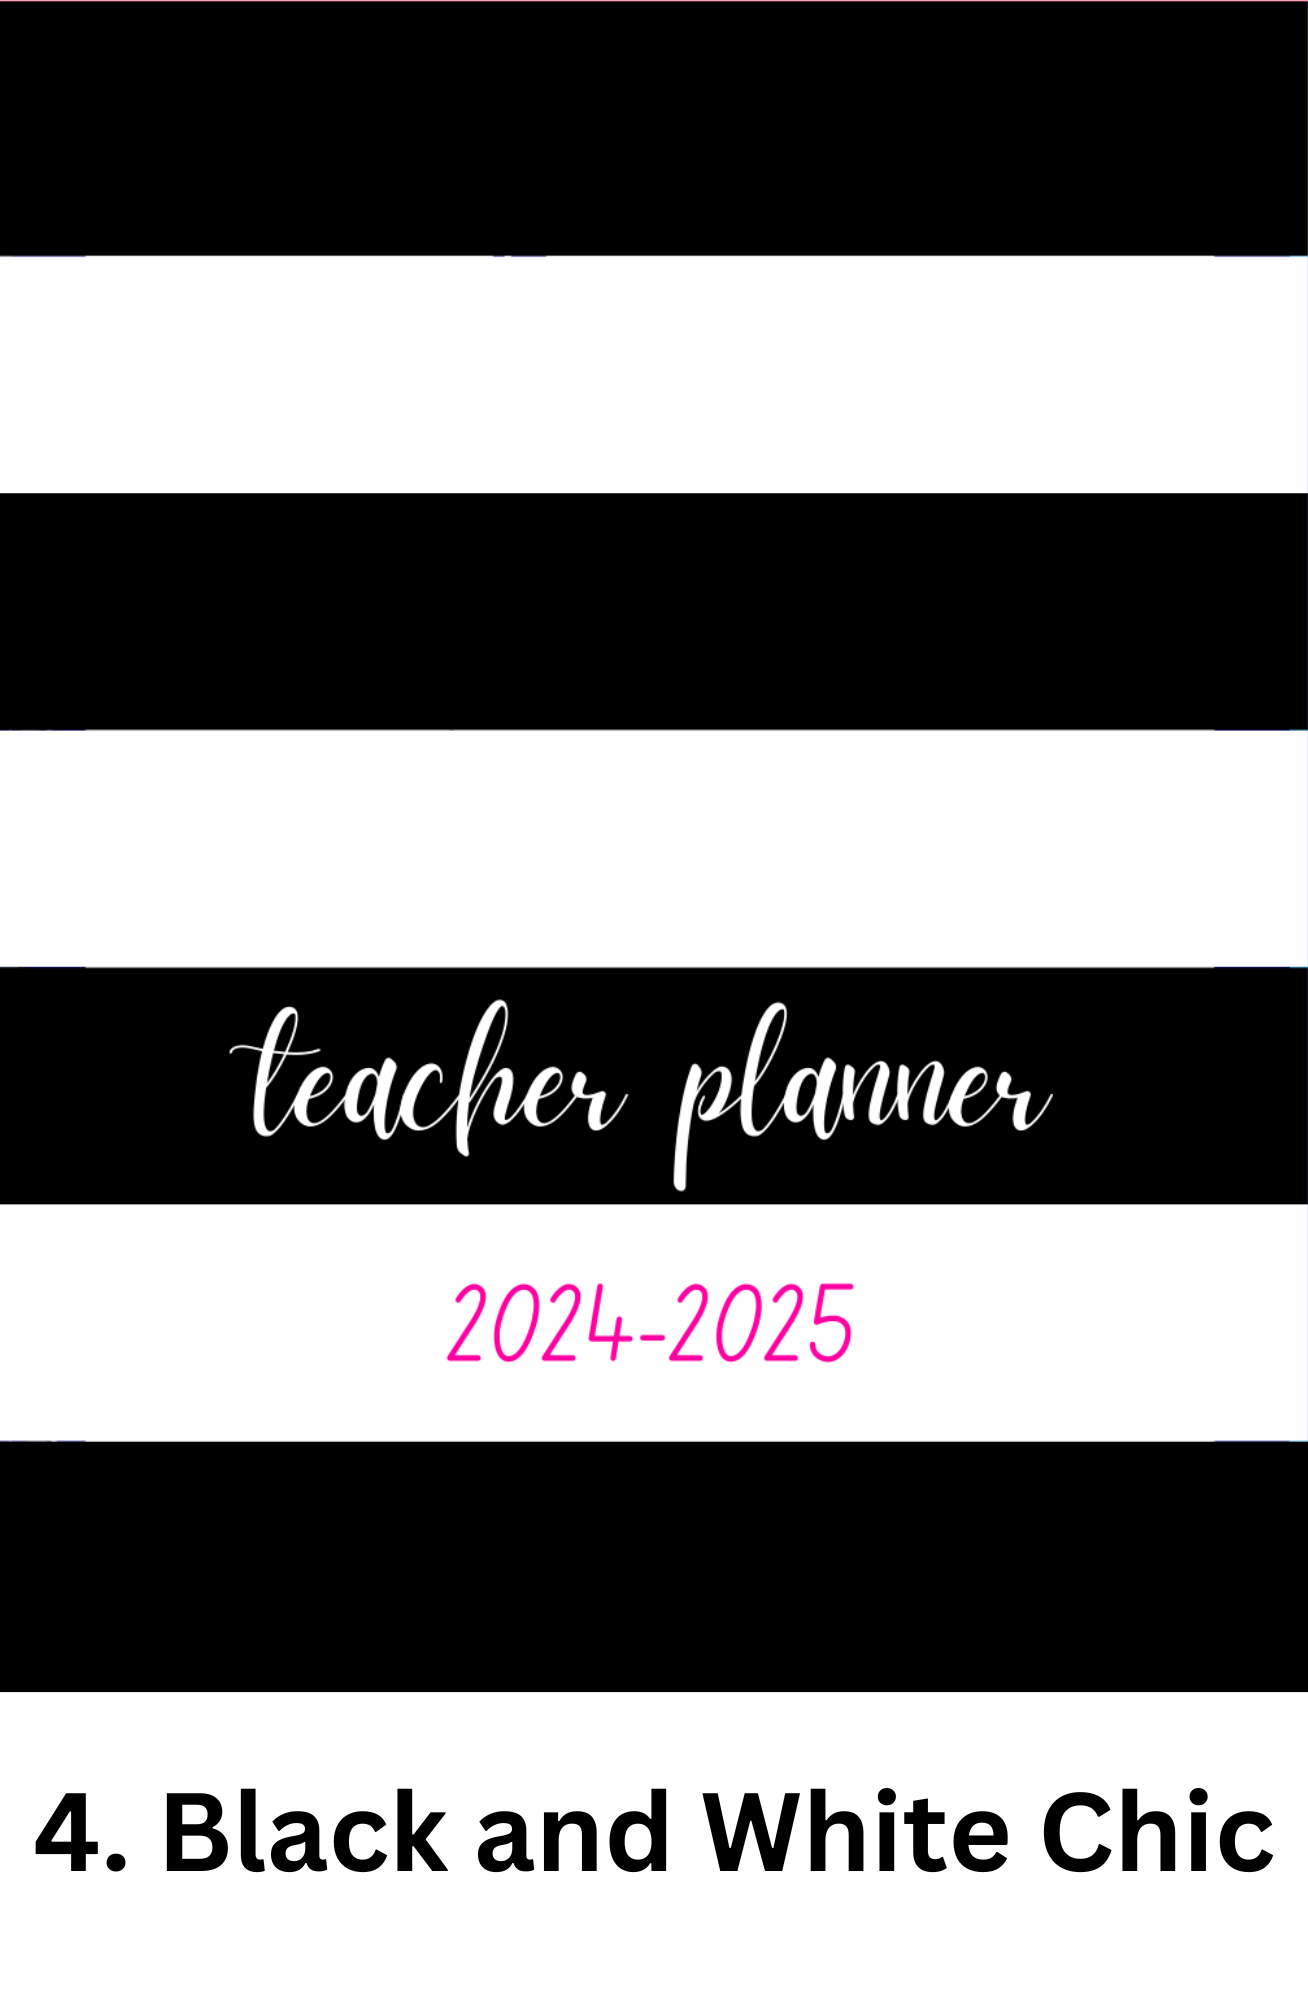 Monthly Teacher Planner - Full Size/Spiral